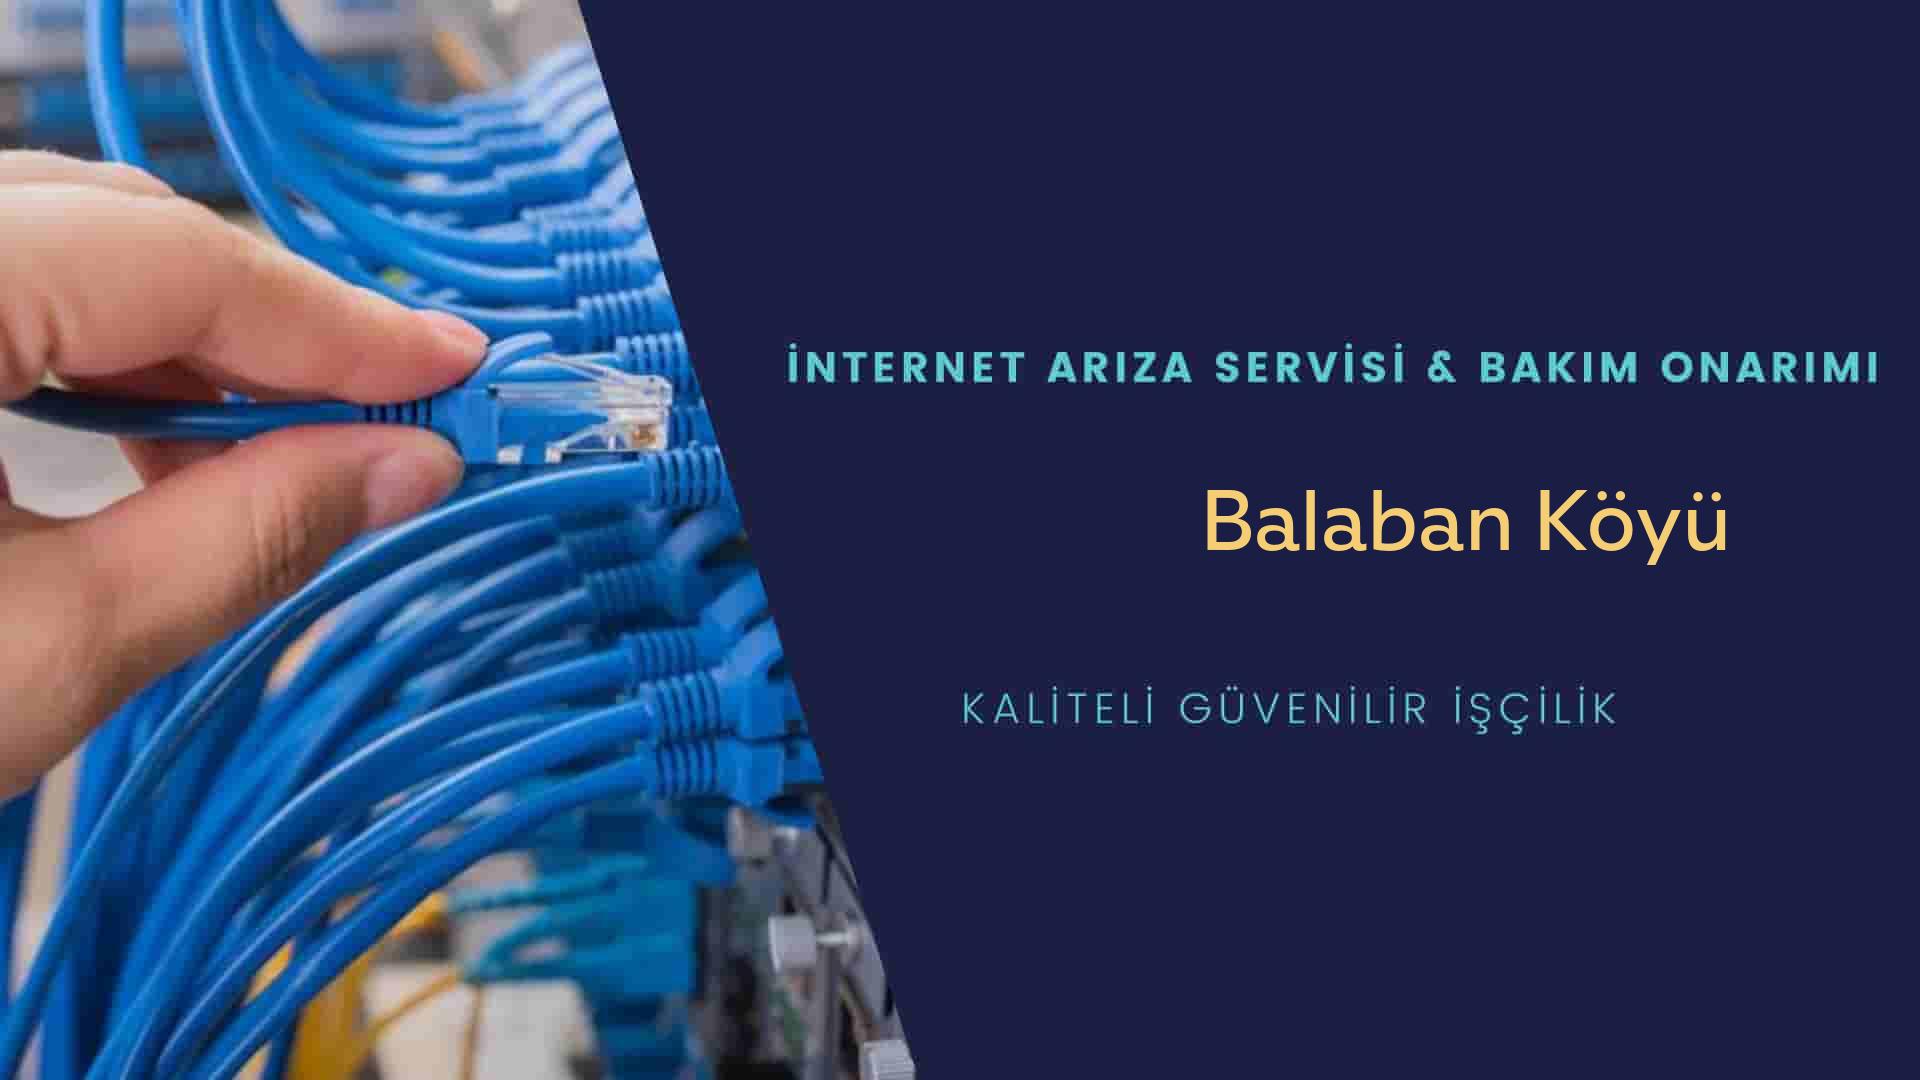 Balaban Köyü internet kablosu çekimi yapan yerler veya elektrikçiler mi? arıyorsunuz doğru yerdesiniz o zaman sizlere 7/24 yardımcı olacak profesyonel ustalarımız bir telefon kadar yakındır size.